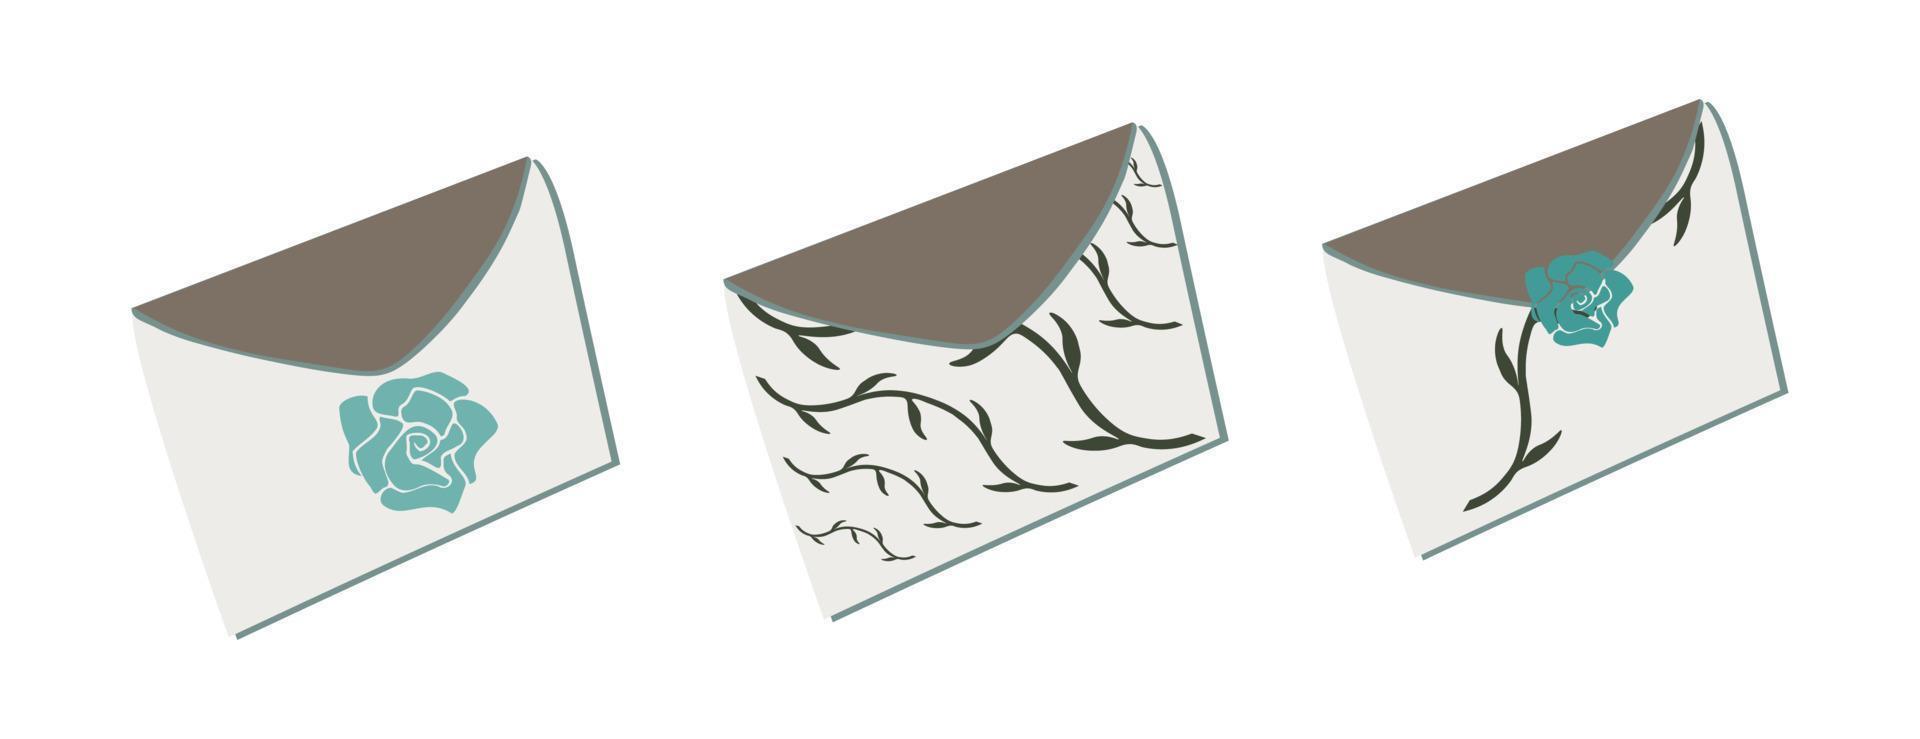 Set of envelopes 2 vector